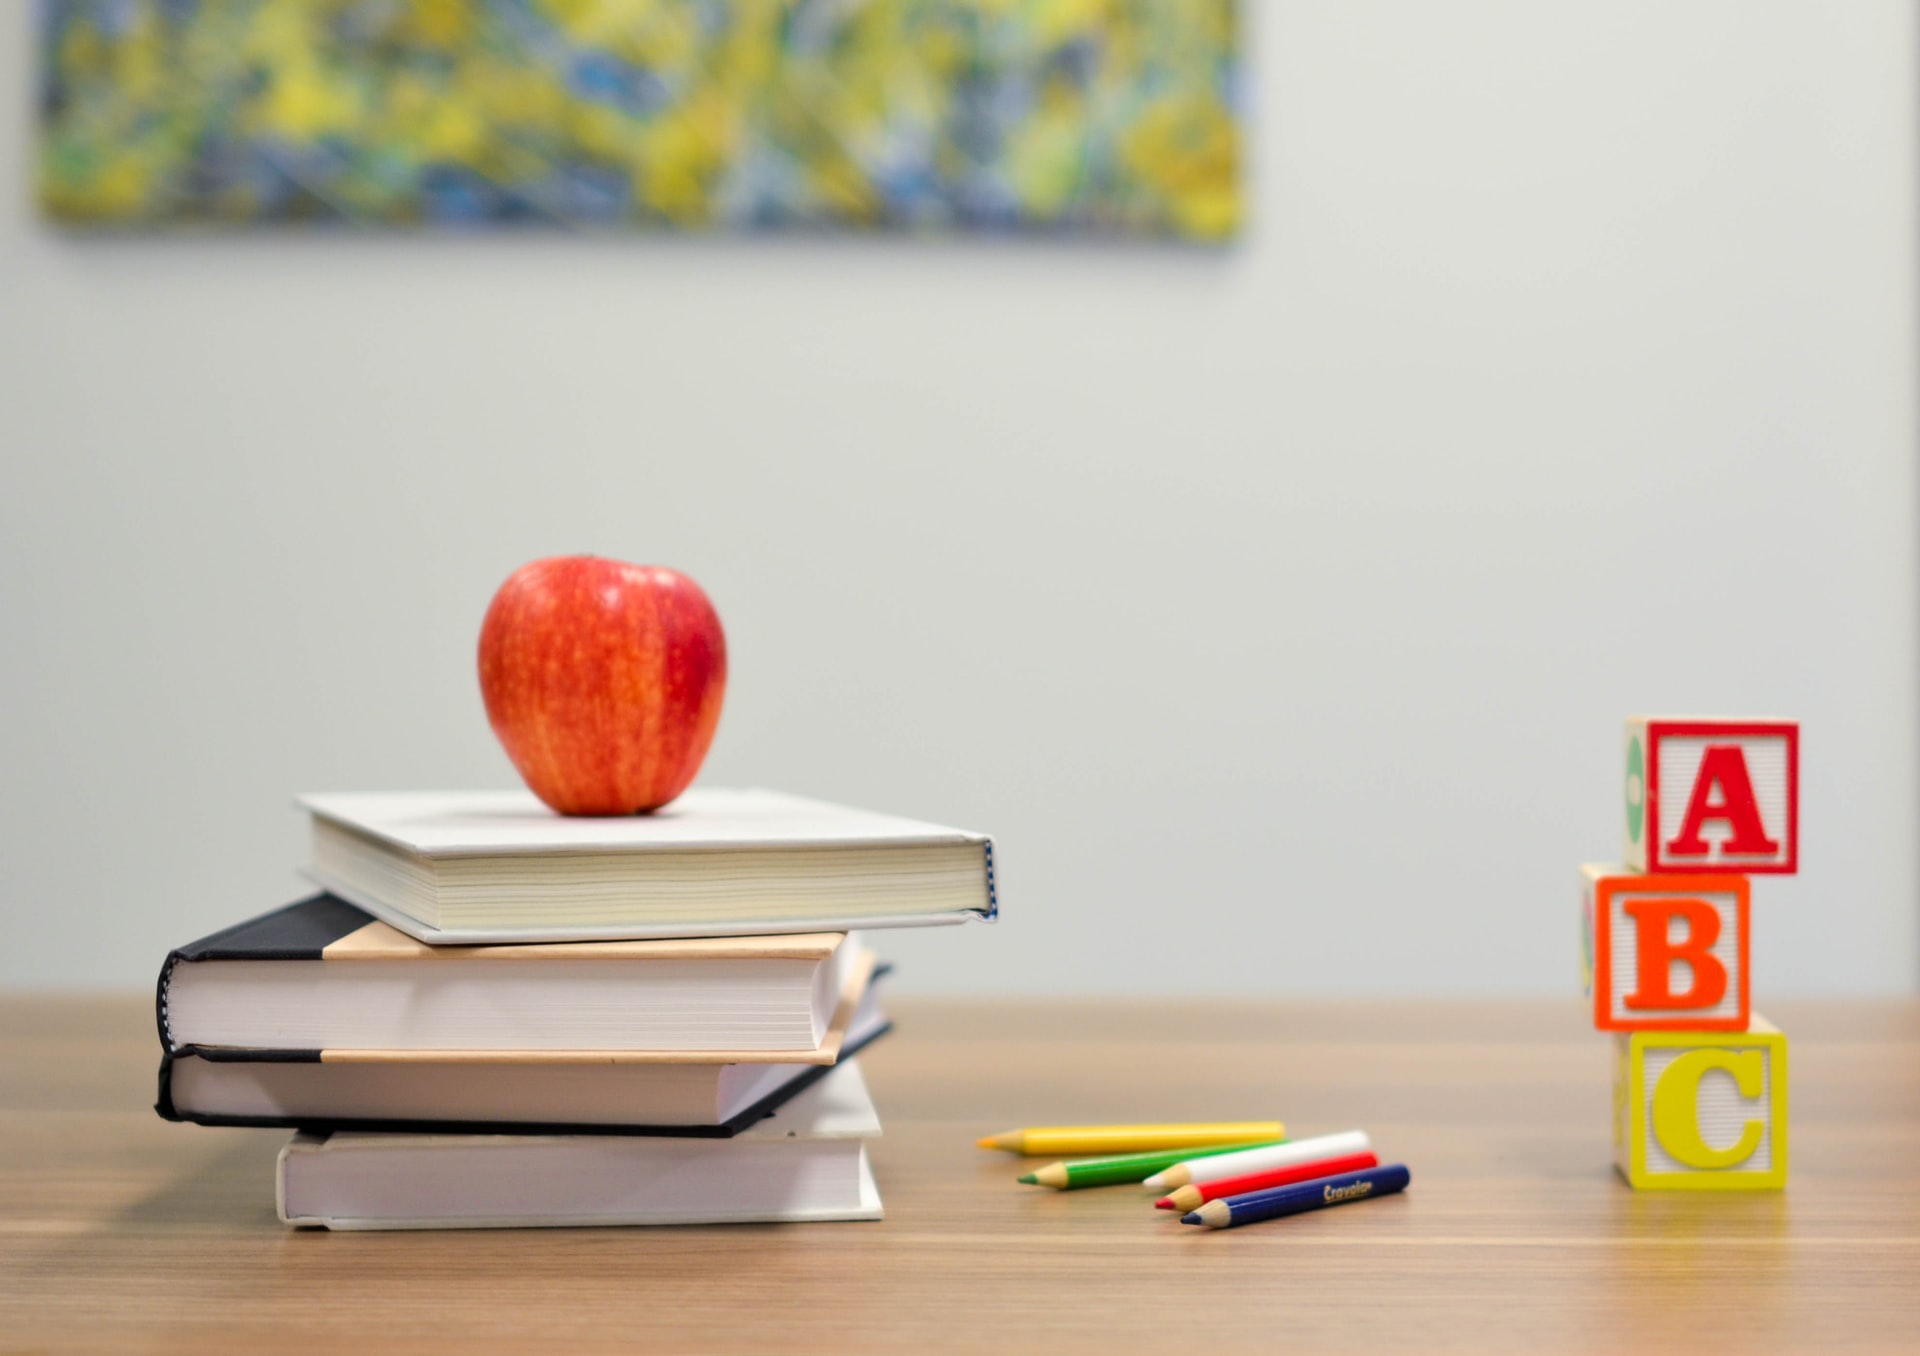 Ein Apfel ist auf einem Stapel Bücher neben Stiften und 3 Holzwürfeln auf denen A, B und C zusehen ist.